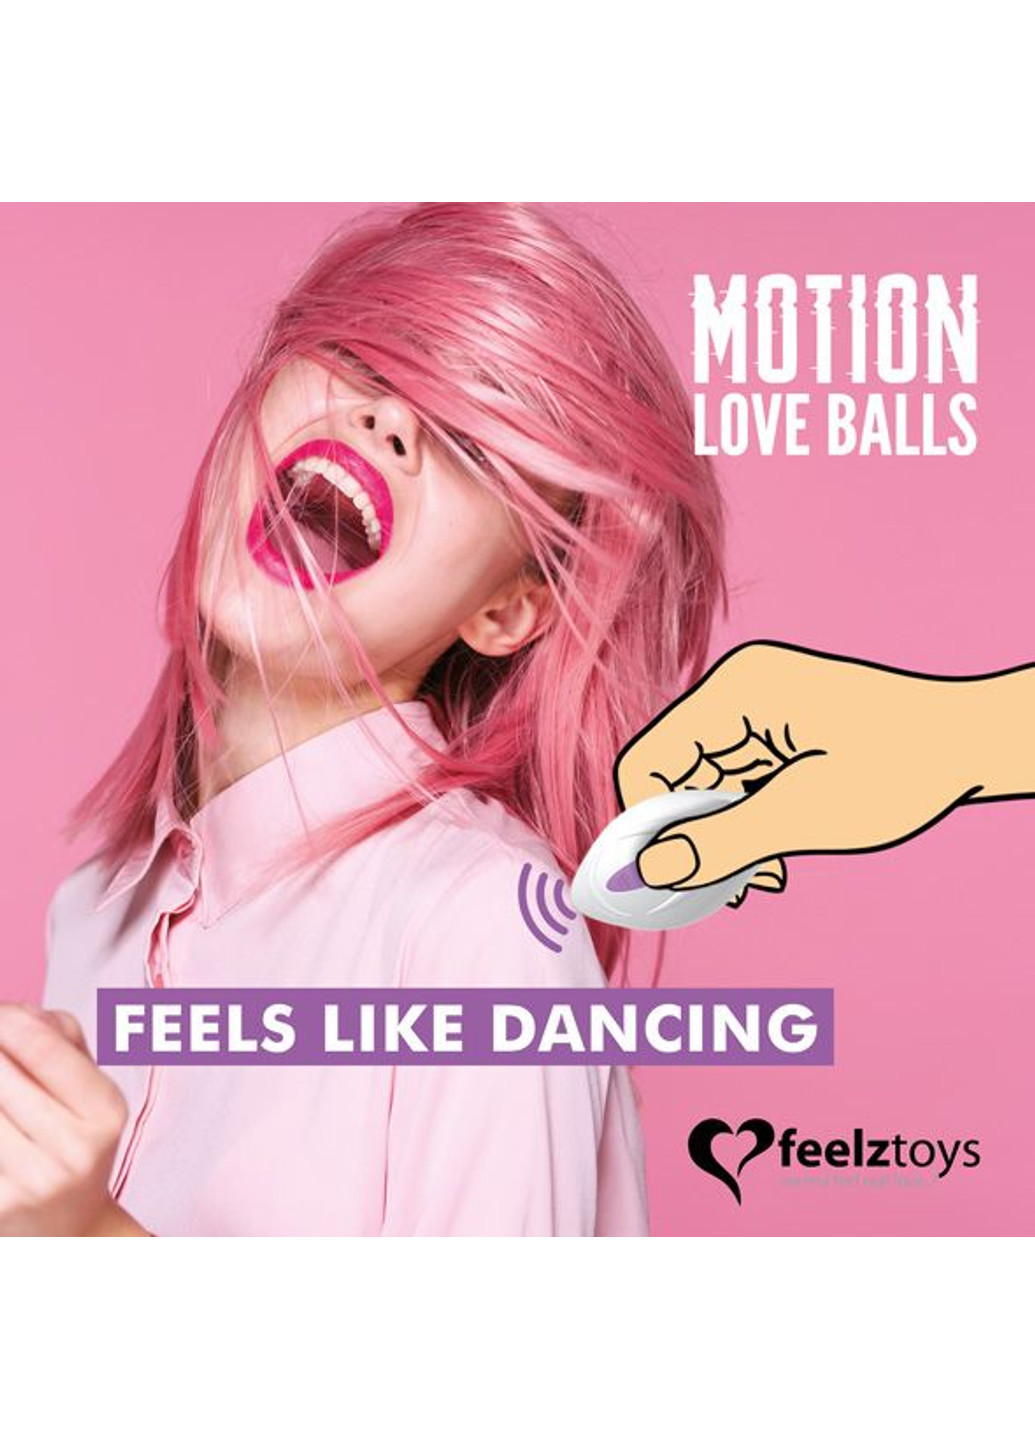 Вагінальні кульки з масажем перлинами Motion Love Balls Foxy FeelzToys (251903322)